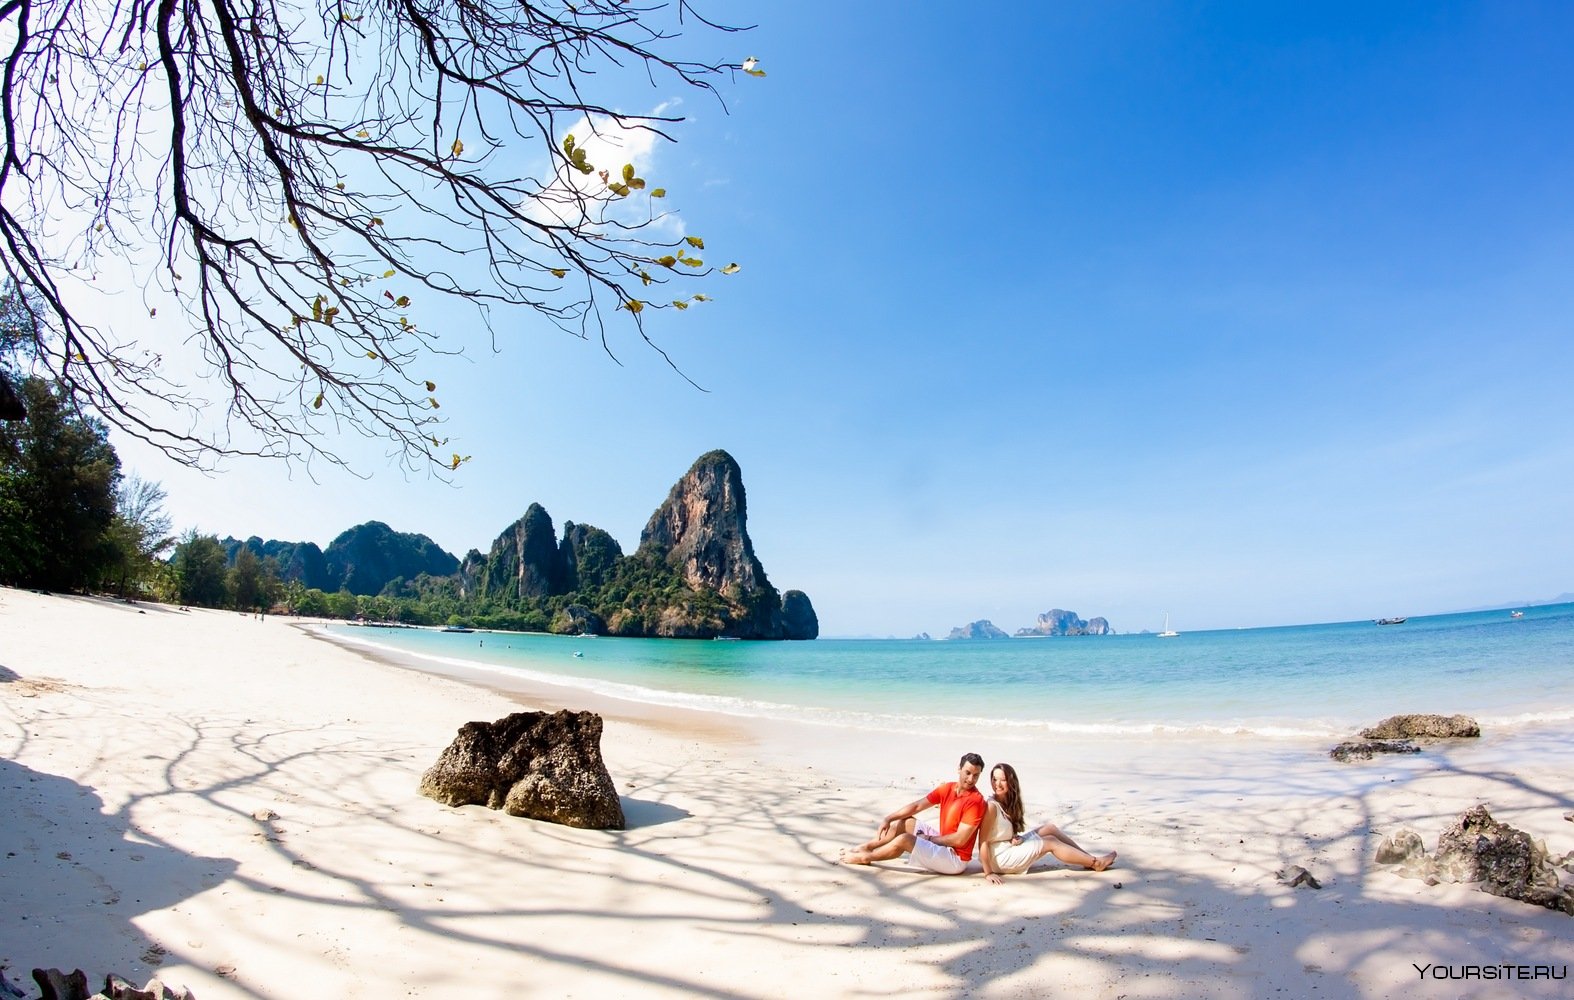 Погода в таиланде по месяцам и курортам: высокий и низкий сезоны